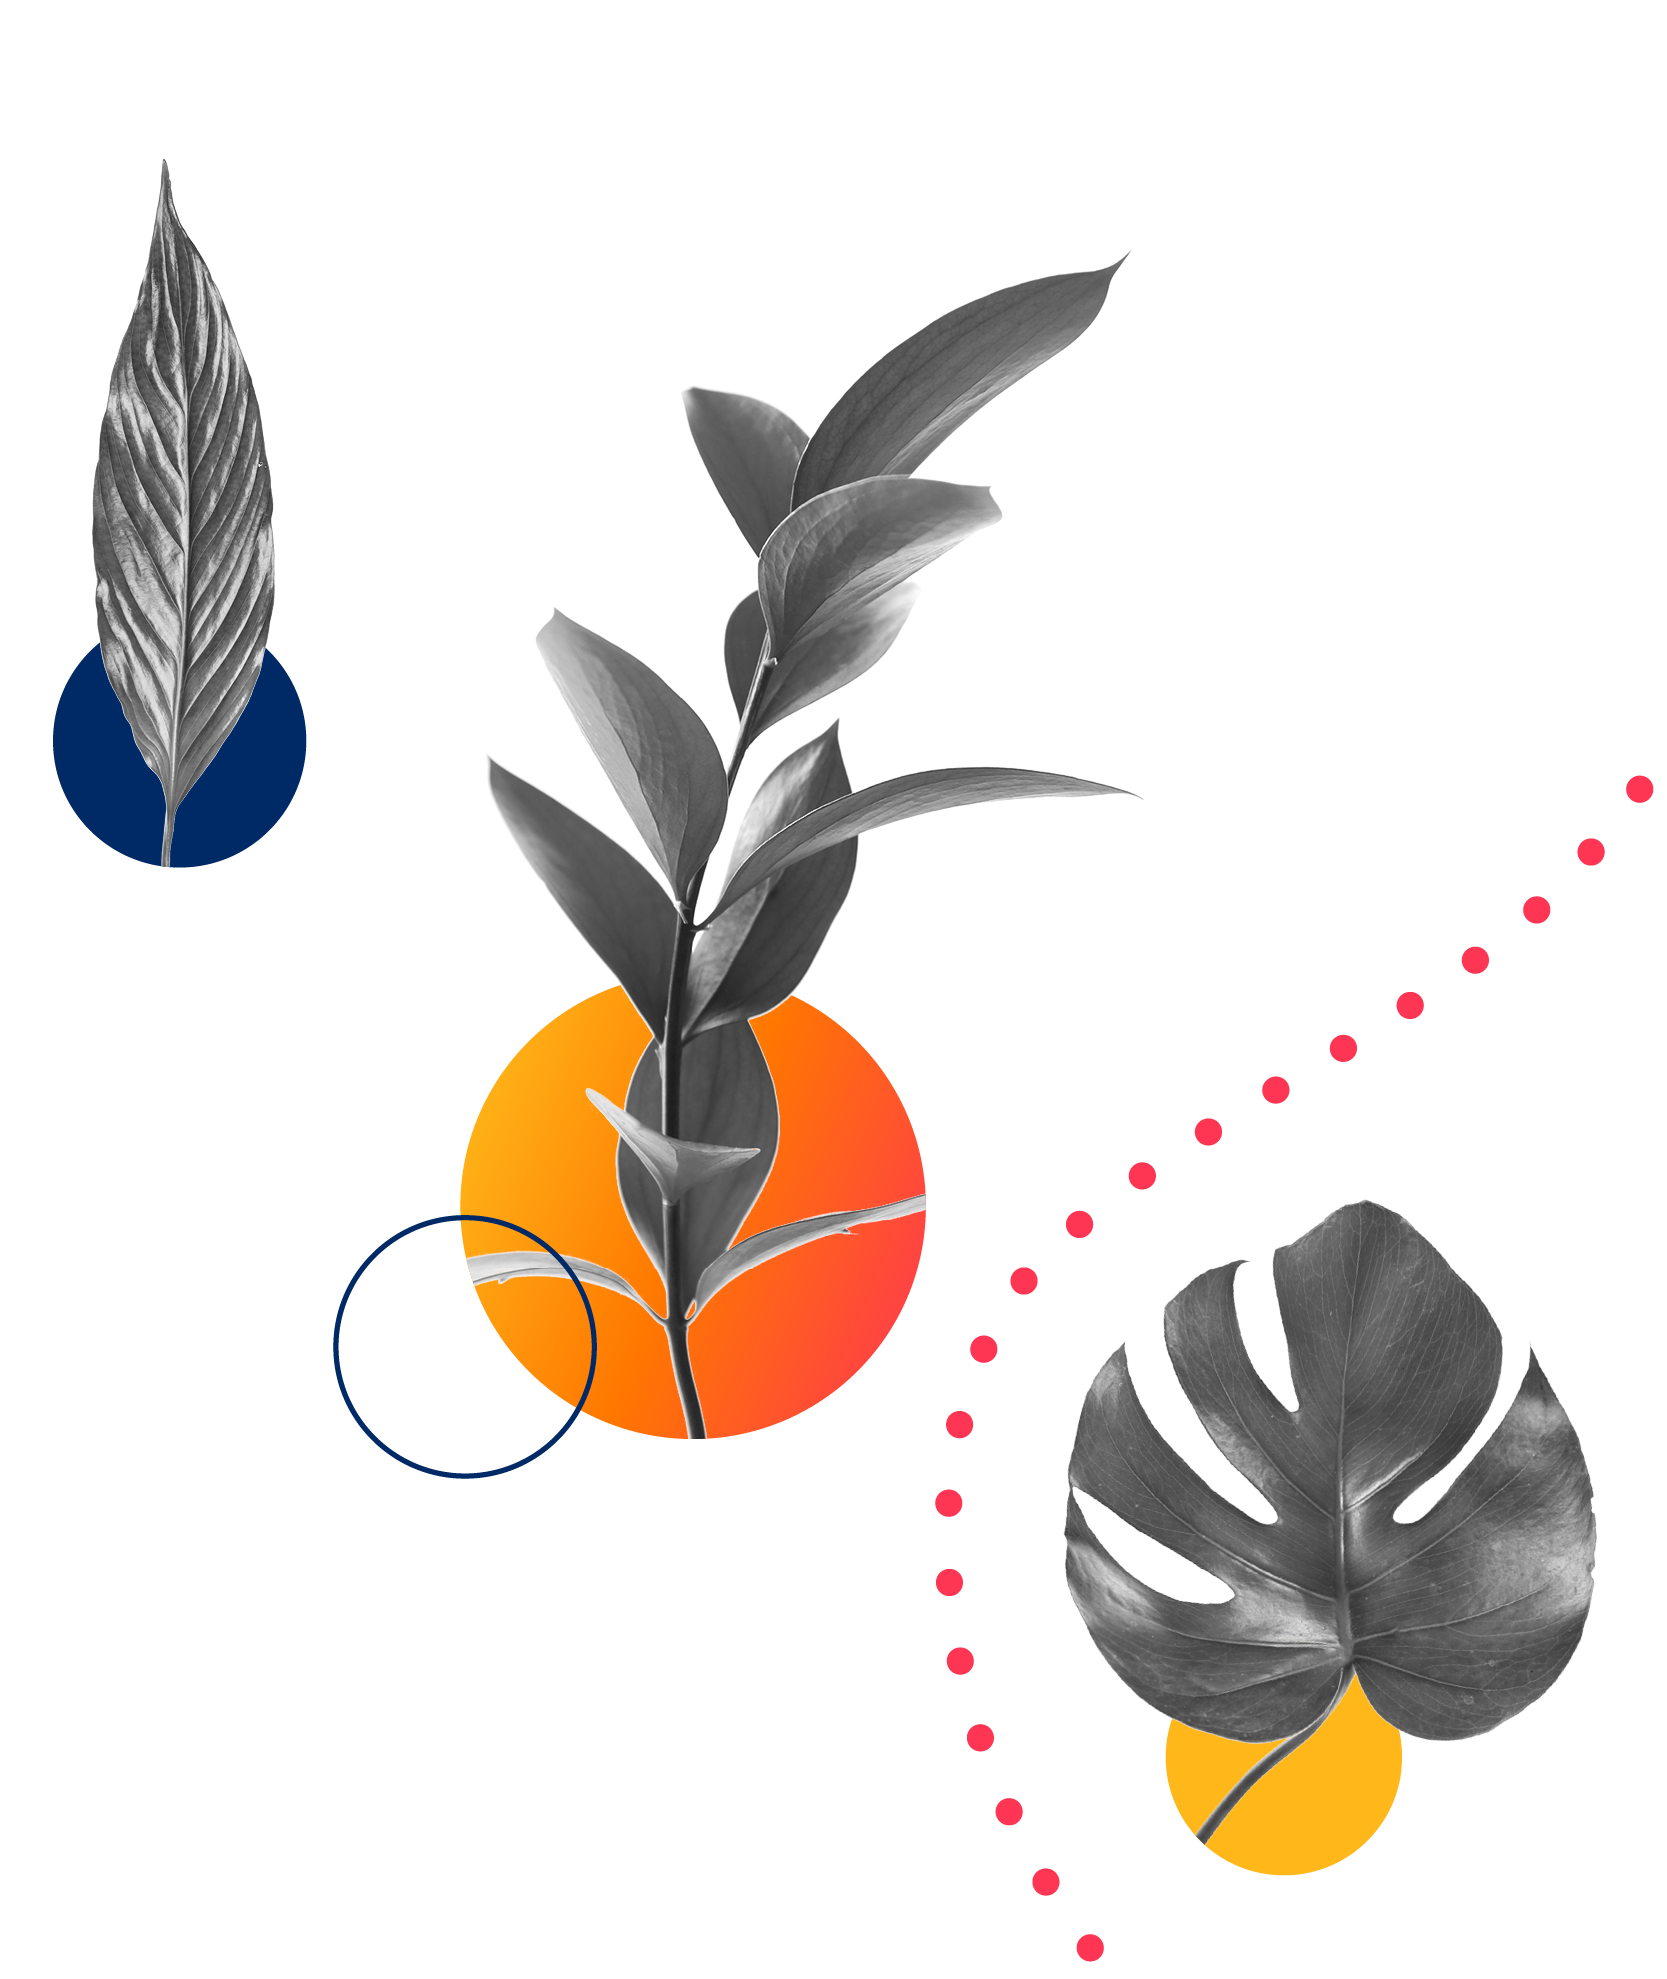 Three different leafy plants represent Aiven's DEI initiative